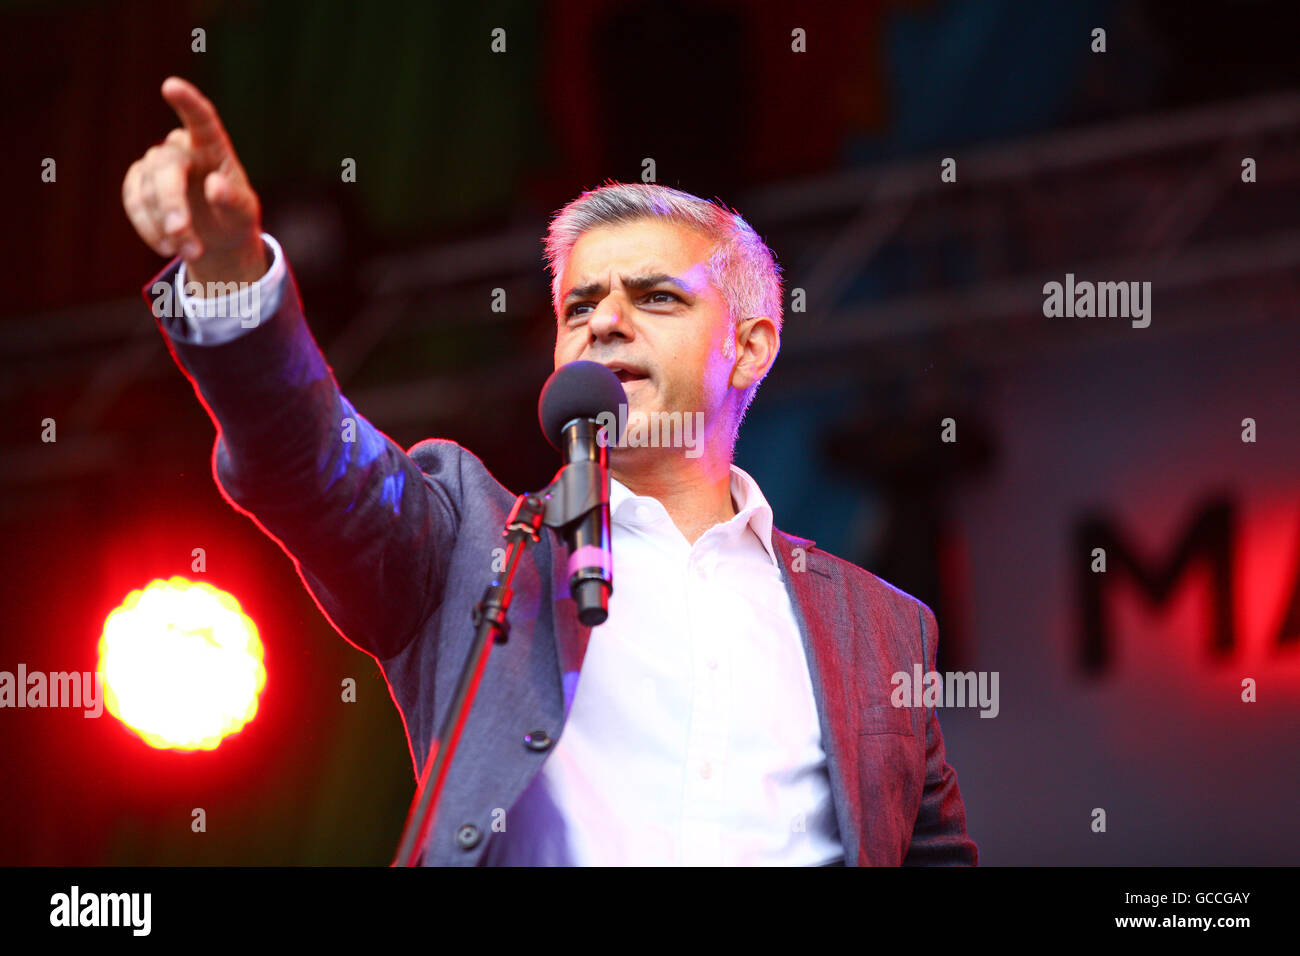 Londres, Reino Unido. El 9 de julio, 2016. El alcalde de Londres, Sadiq Khan, direcciones a grandes multitudes durante Eid celebraciones en Trafalgar Square. Sadiq Khan es el primer alcalde musulmán de Londres. Crédito: Dinendra Haria/Alamy Live News Foto de stock